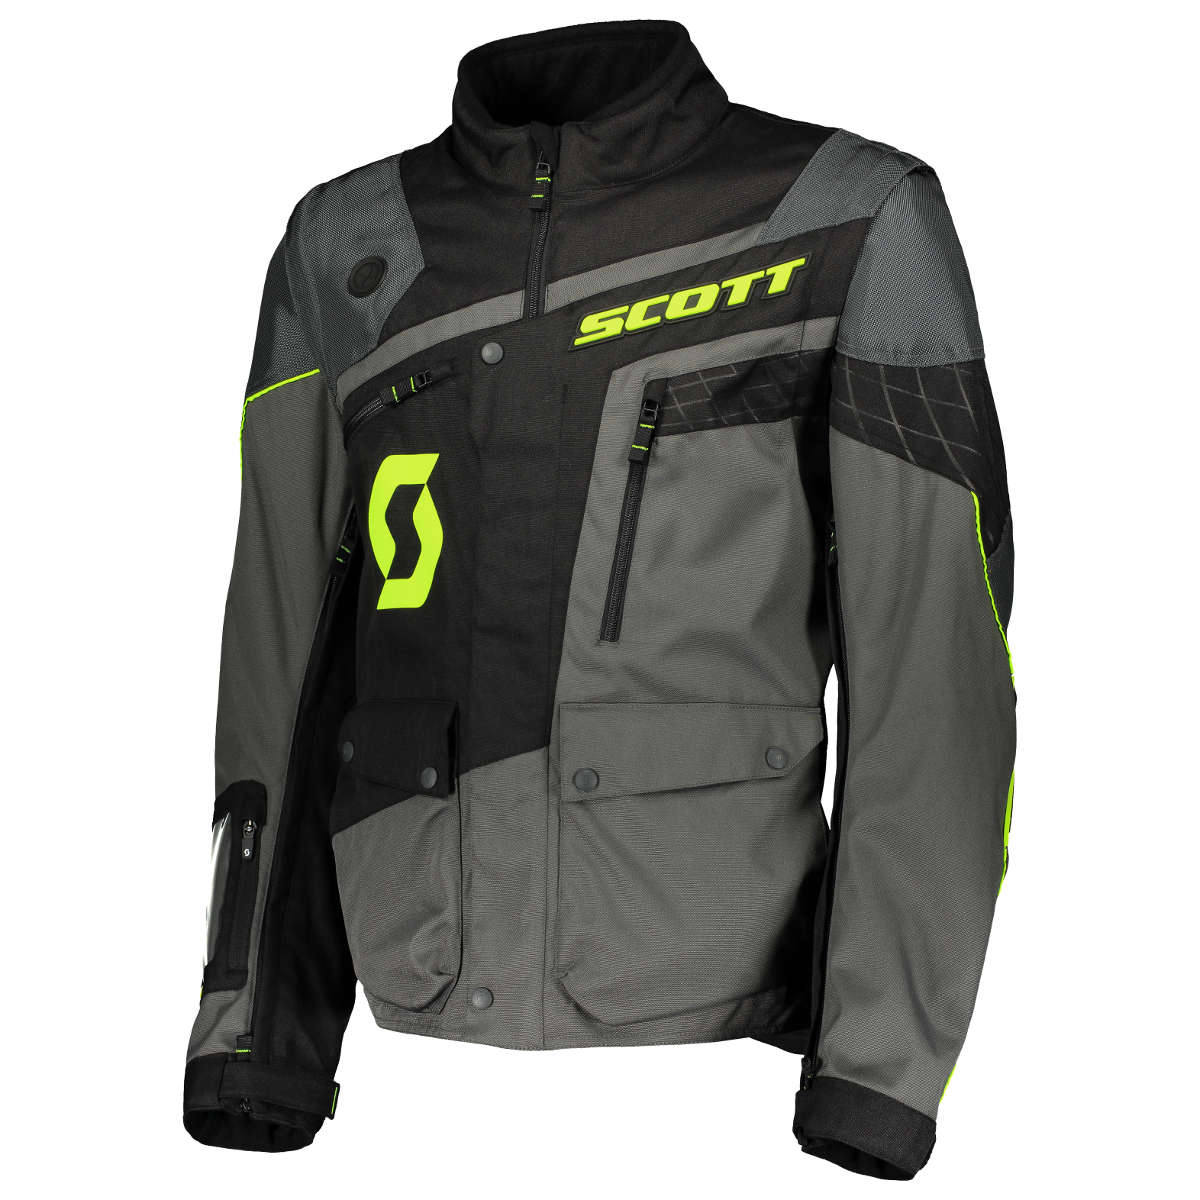 Scott MX Jacket 350 Adventure Grey/Black